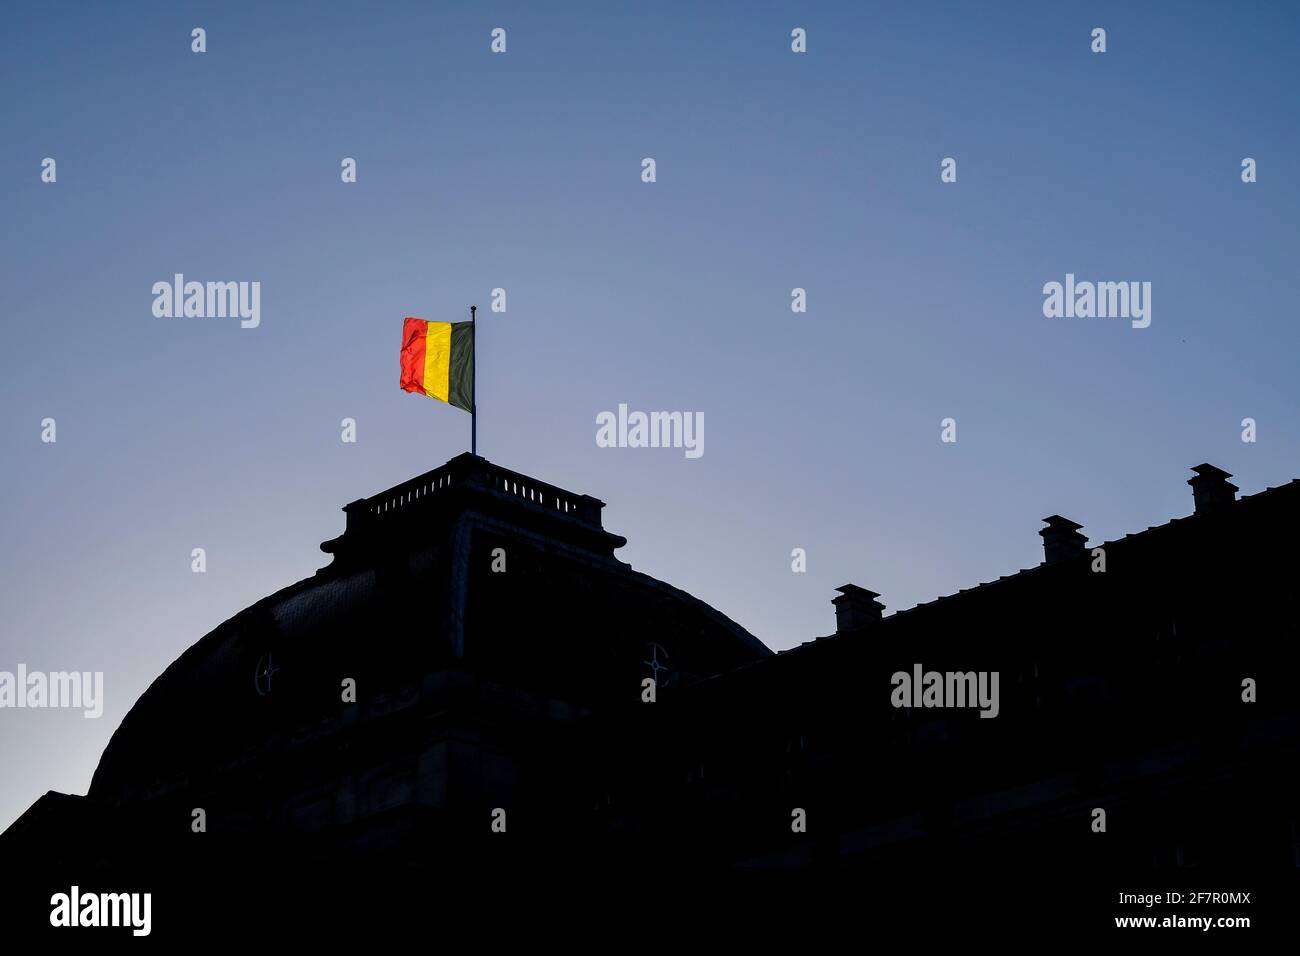 15.12.2019, Brüssel, Belgien - die belgische Fahne auf dem Dach des königlichen Palastes in Brüssel zeigt an, dass die königliche Familie anwesend ist Stockfoto